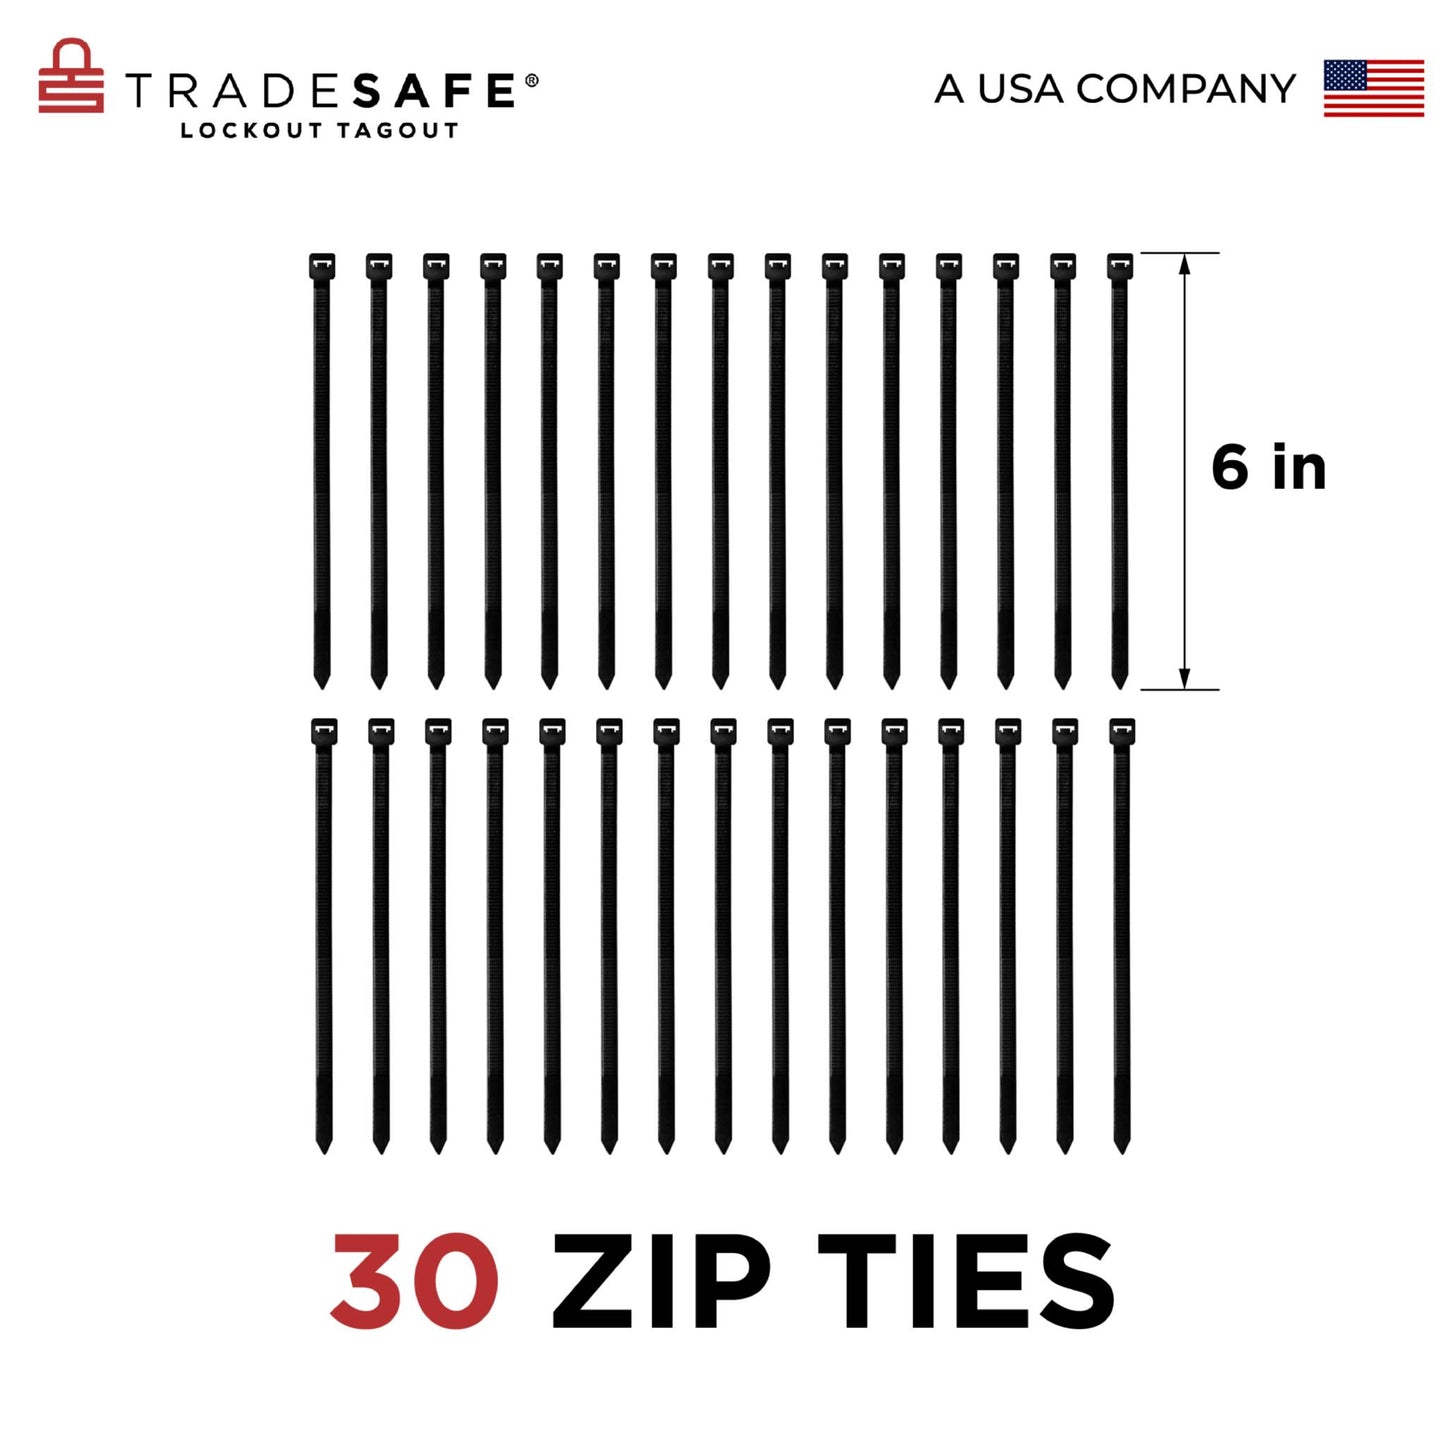 eye-level view of black zip ties in 30 pack